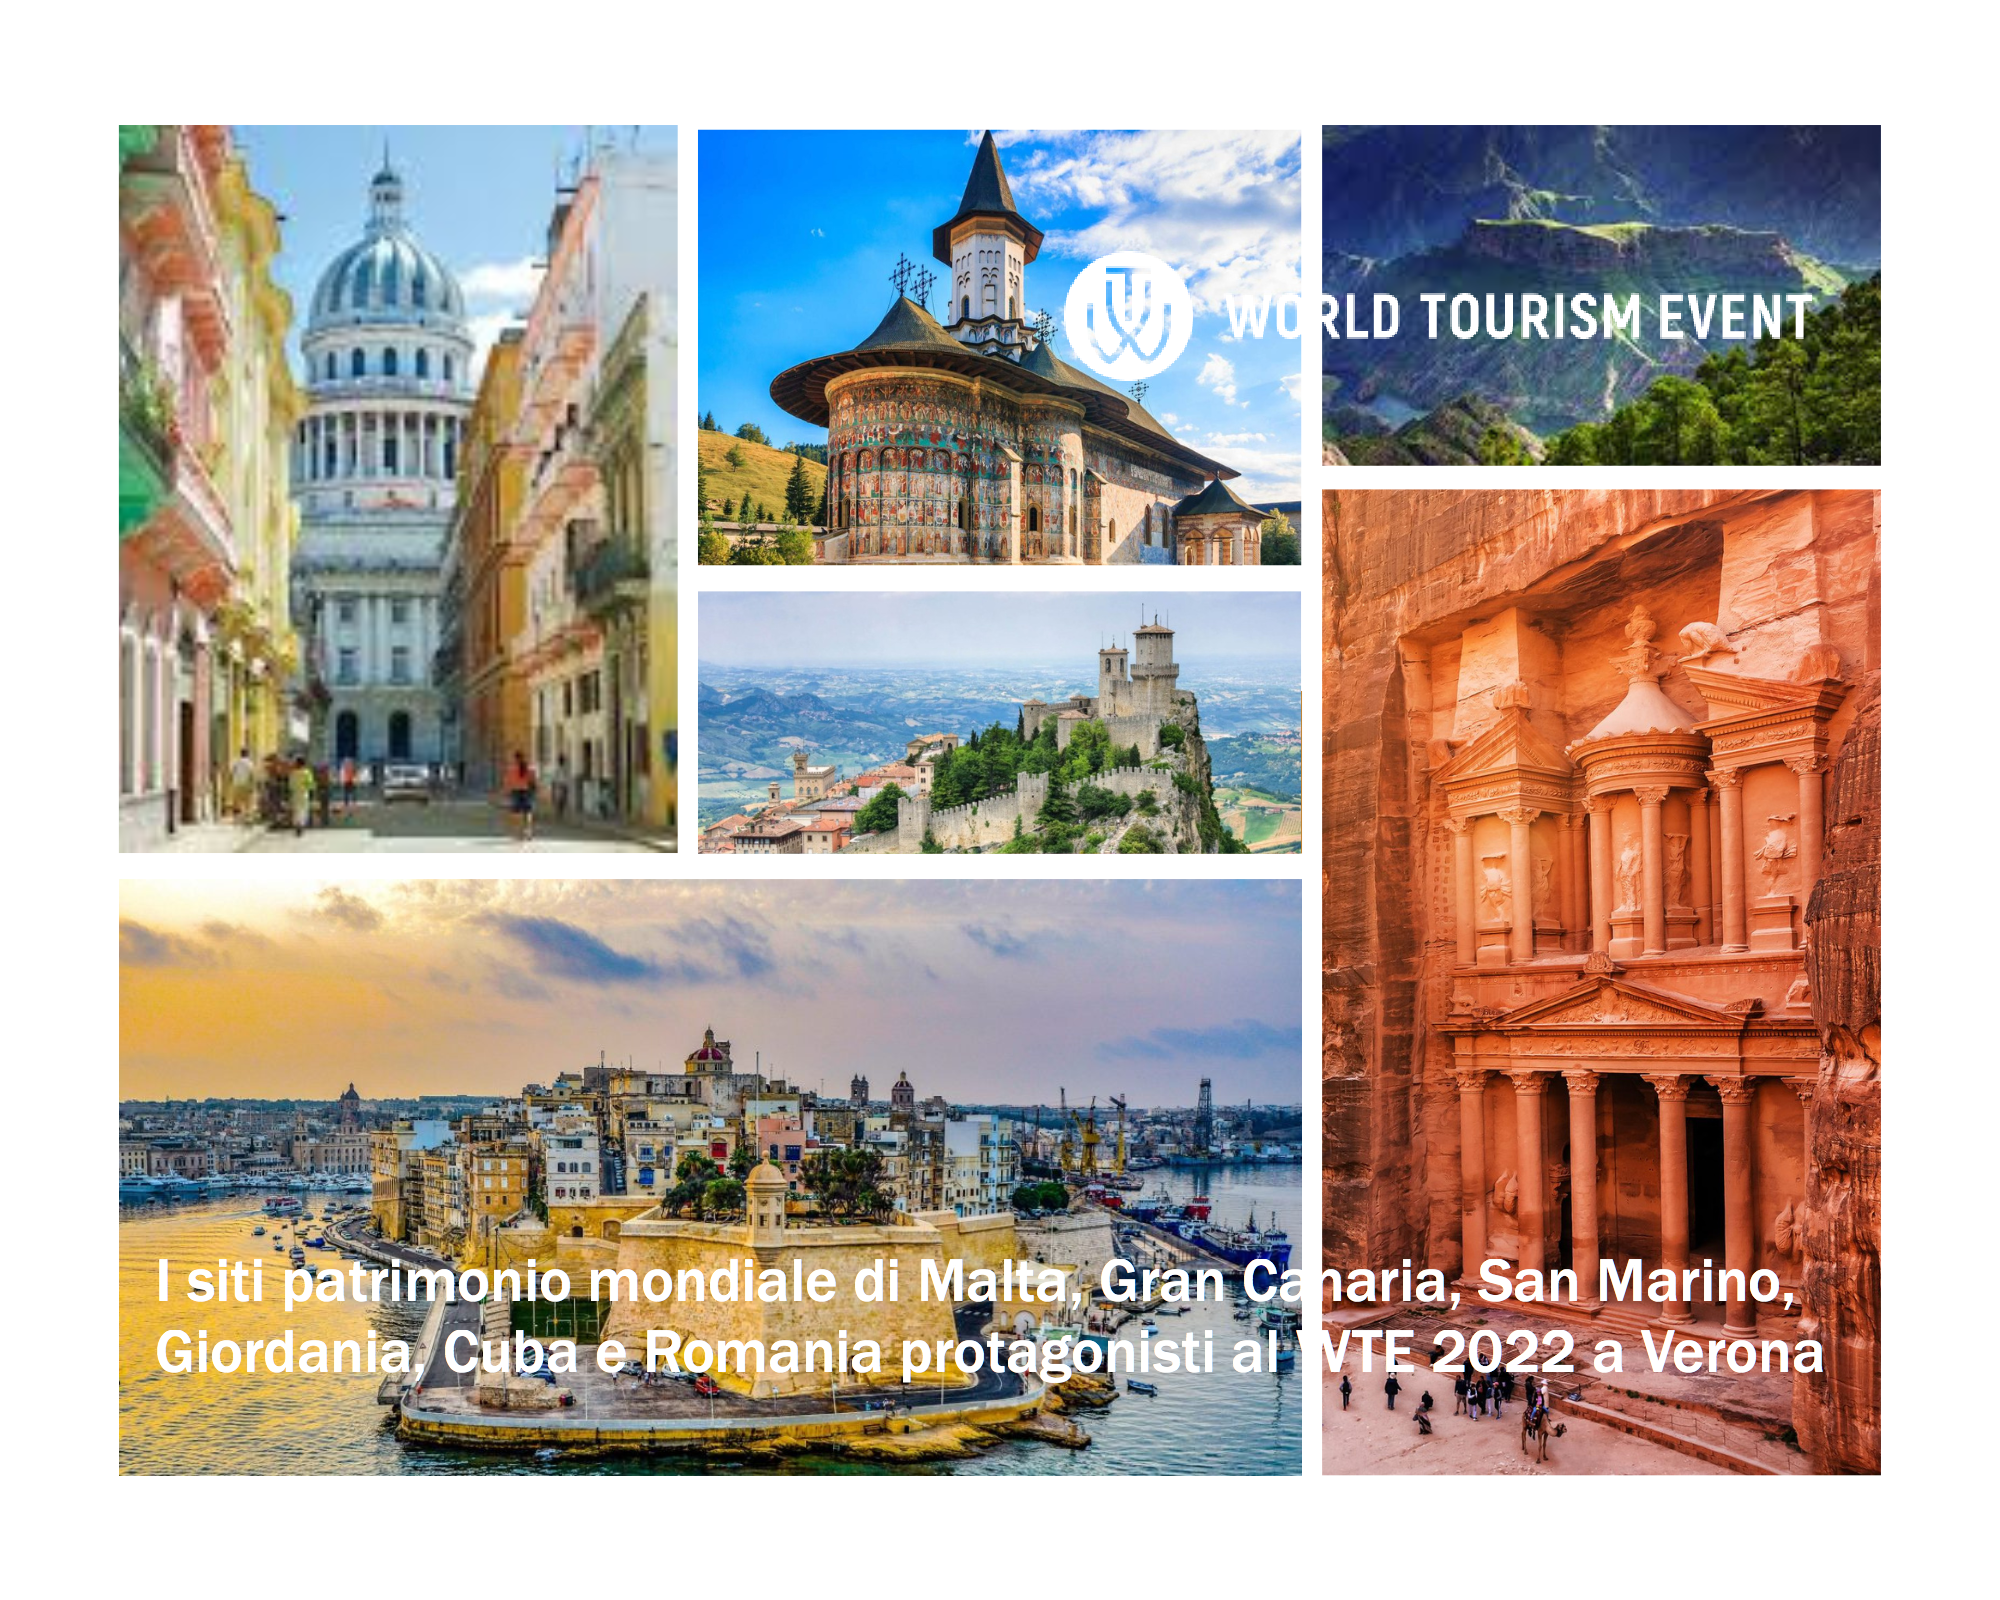 I siti patrimonio mondiale di Malta, Gran Canaria, San Marino, Giordania, Cuba e Romania protagonisti al WTE 2022 a Verona